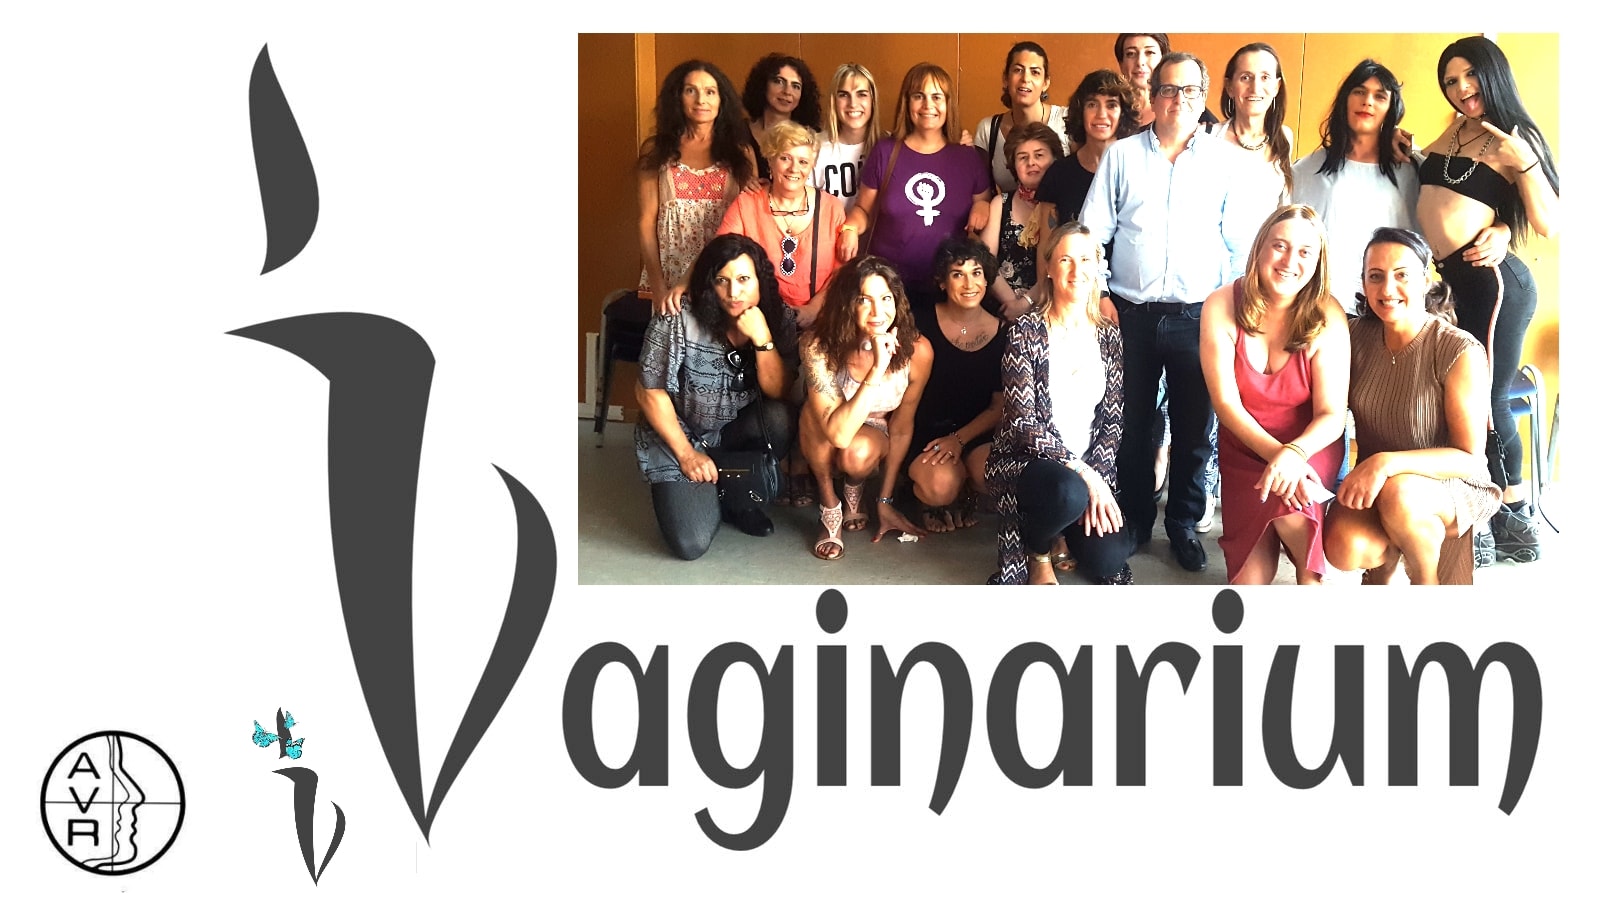 Charla sobre cirugía facial para la Asociación I-Vaginarium